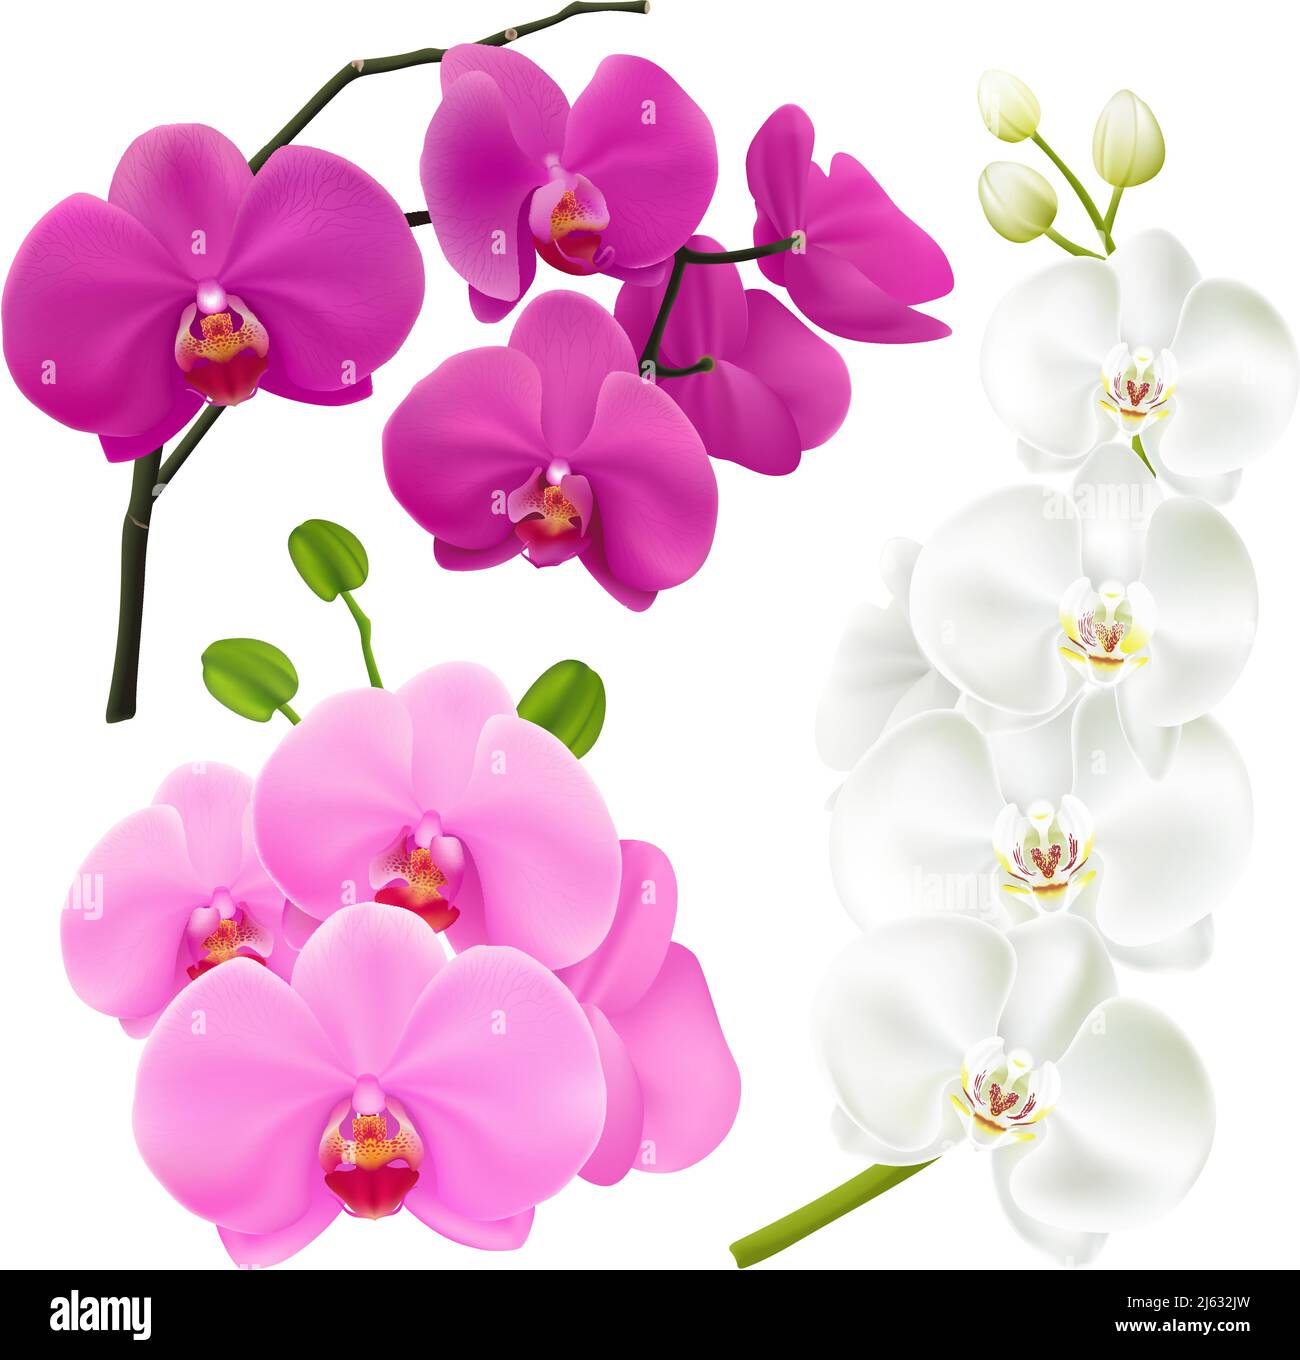 Branches d'orchidées avec fleurs colorées 3 images réalistes illustration vectorielle rose magenta violet et blanc Illustration de Vecteur